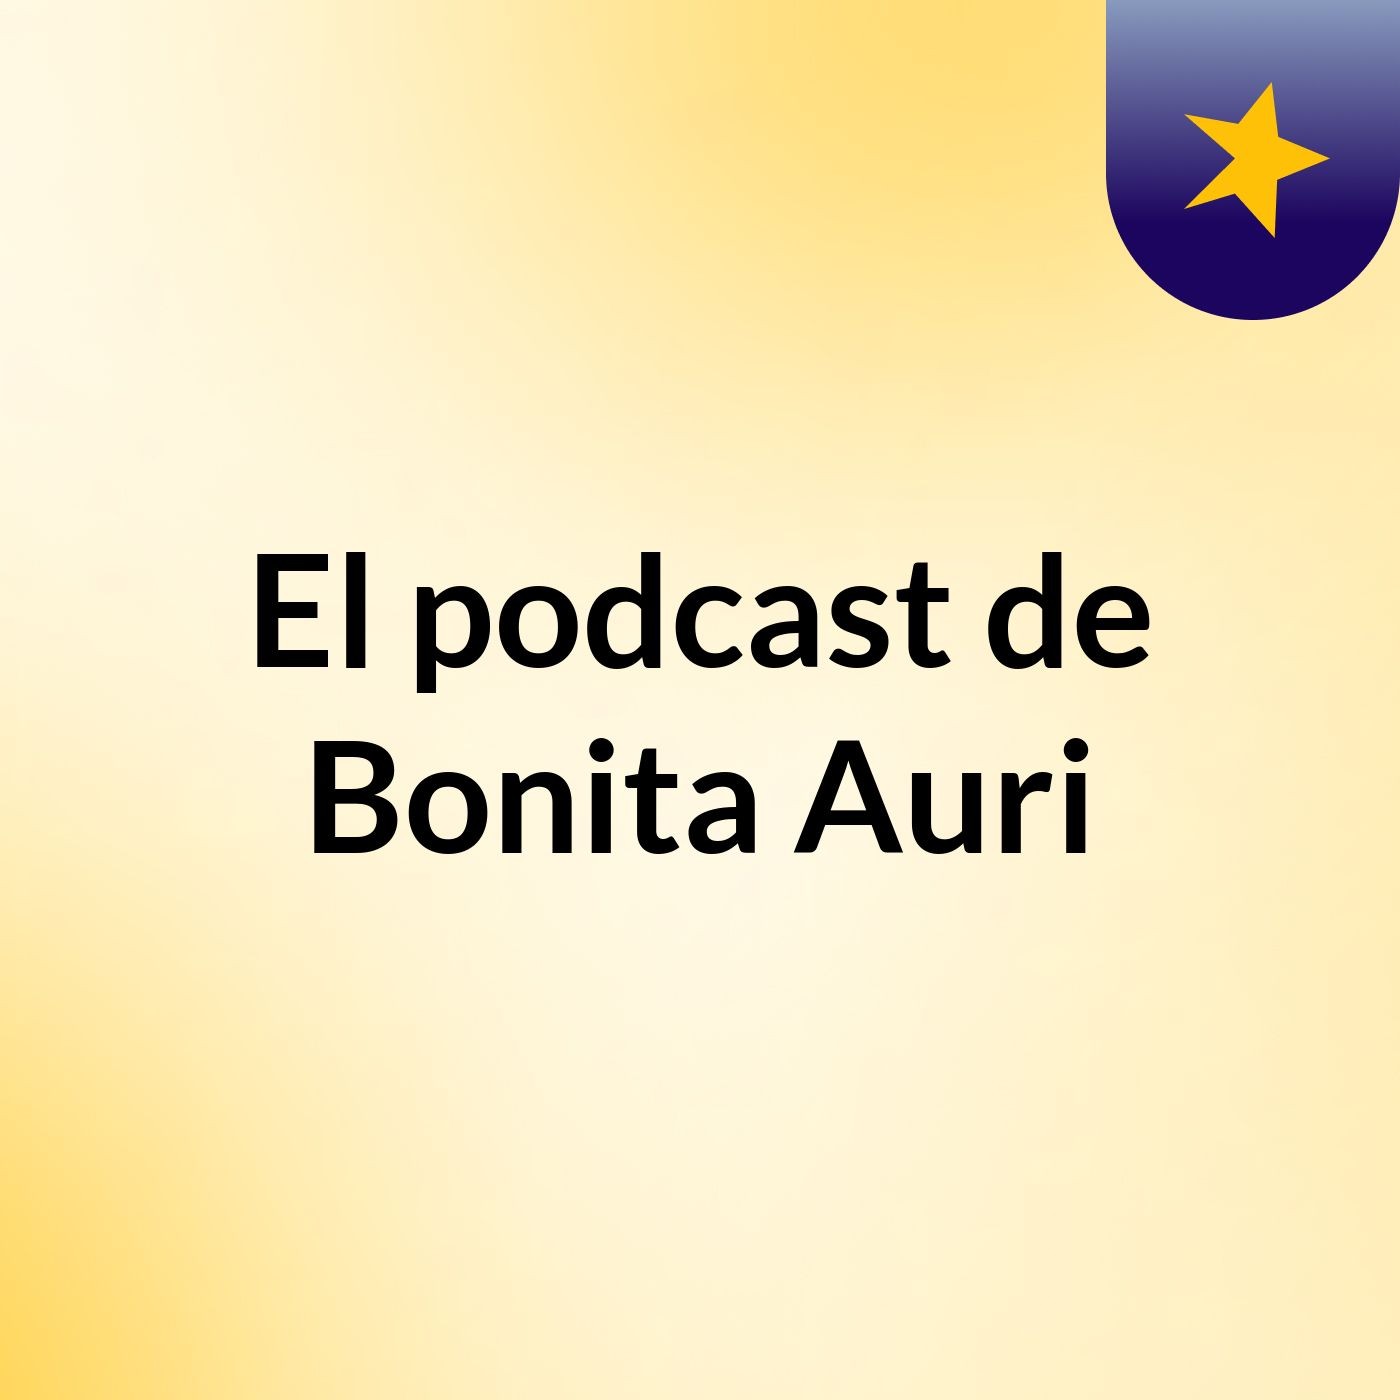 El podcast de Bonita Auri